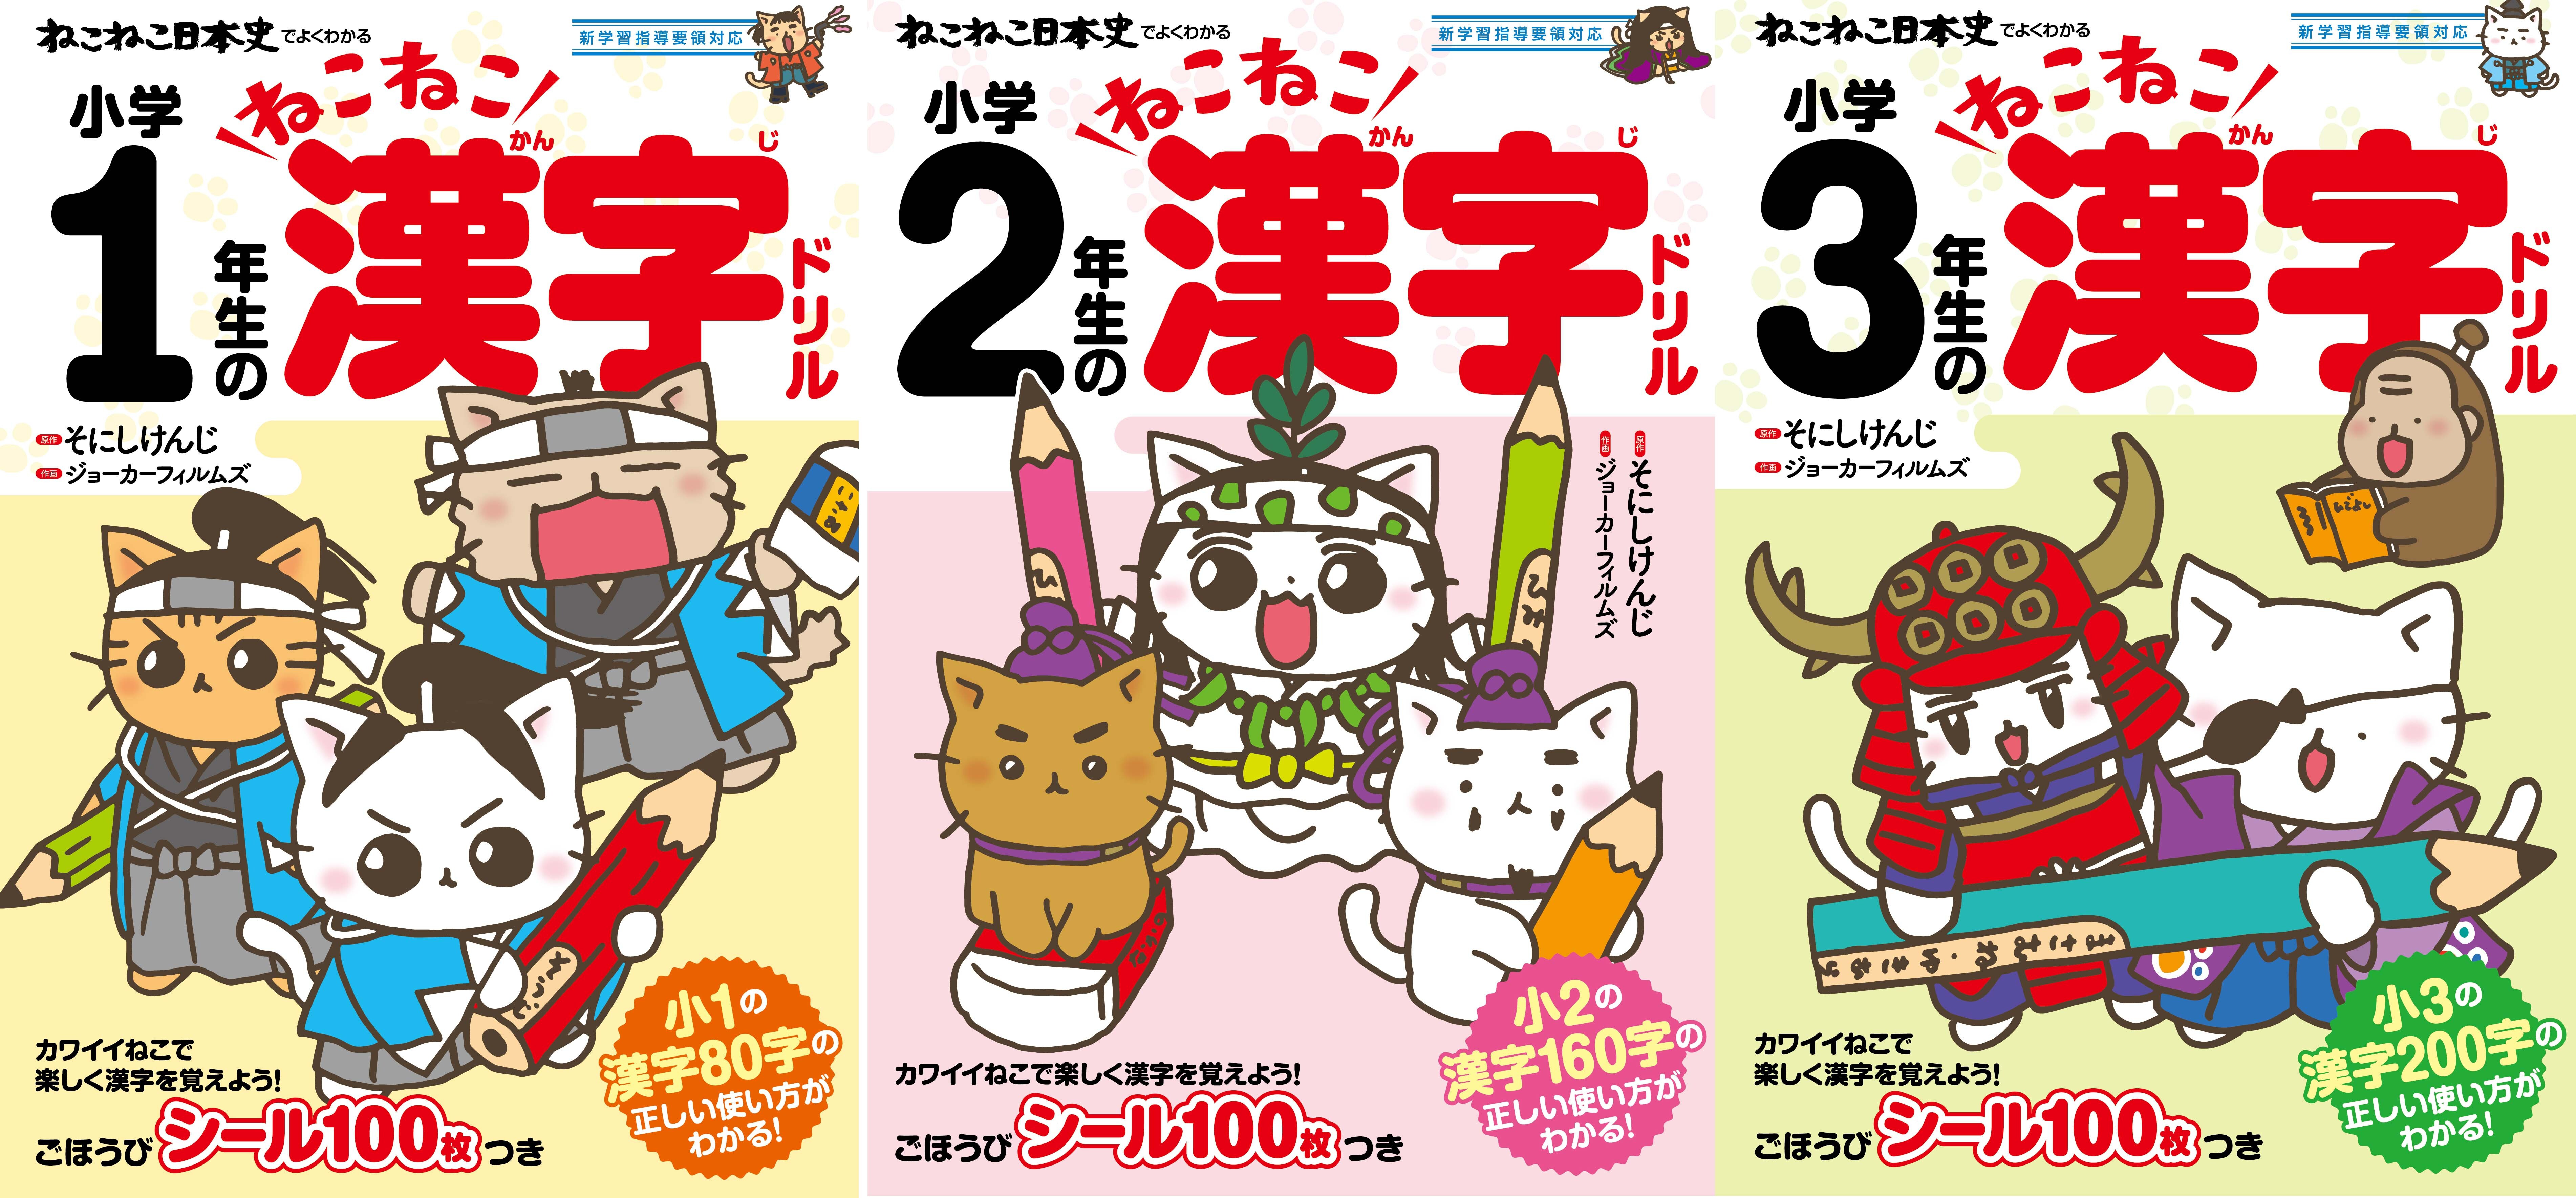 ねこねこ漢字ドリル で楽しく漢字を覚えよう ついに出た 猫だらけのオモシロ漢字ドリル決定版を発売 株式会社実業之日本社のプレスリリース